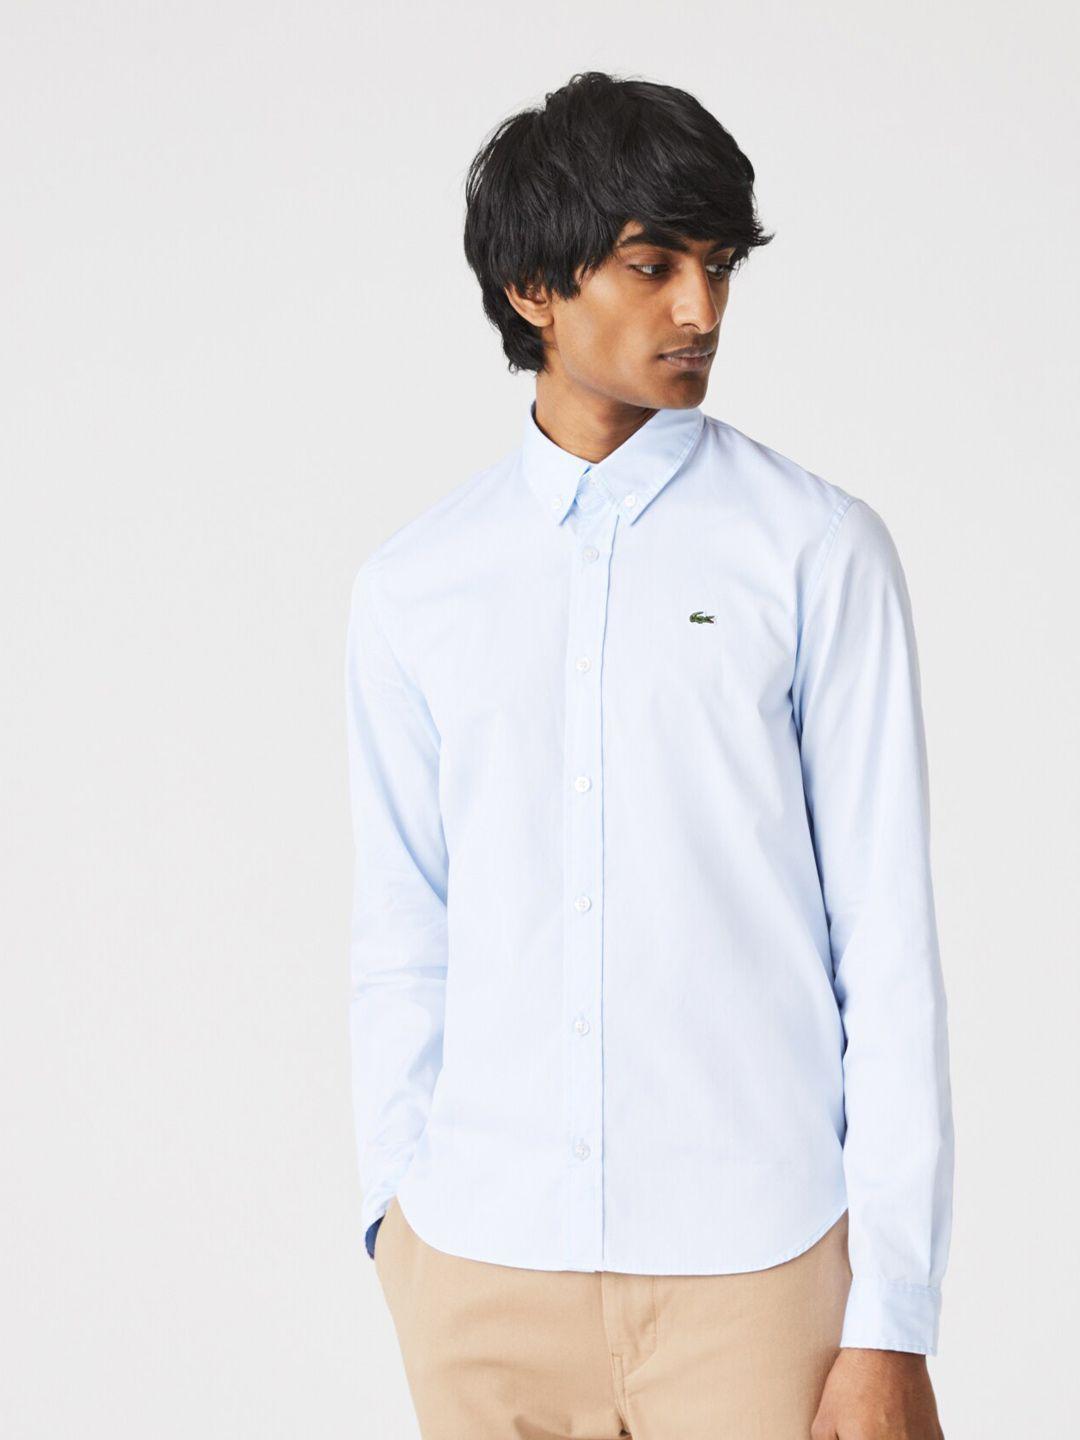 lacoste-men-premium-slim-fit-pure-cotton-formal-shirt